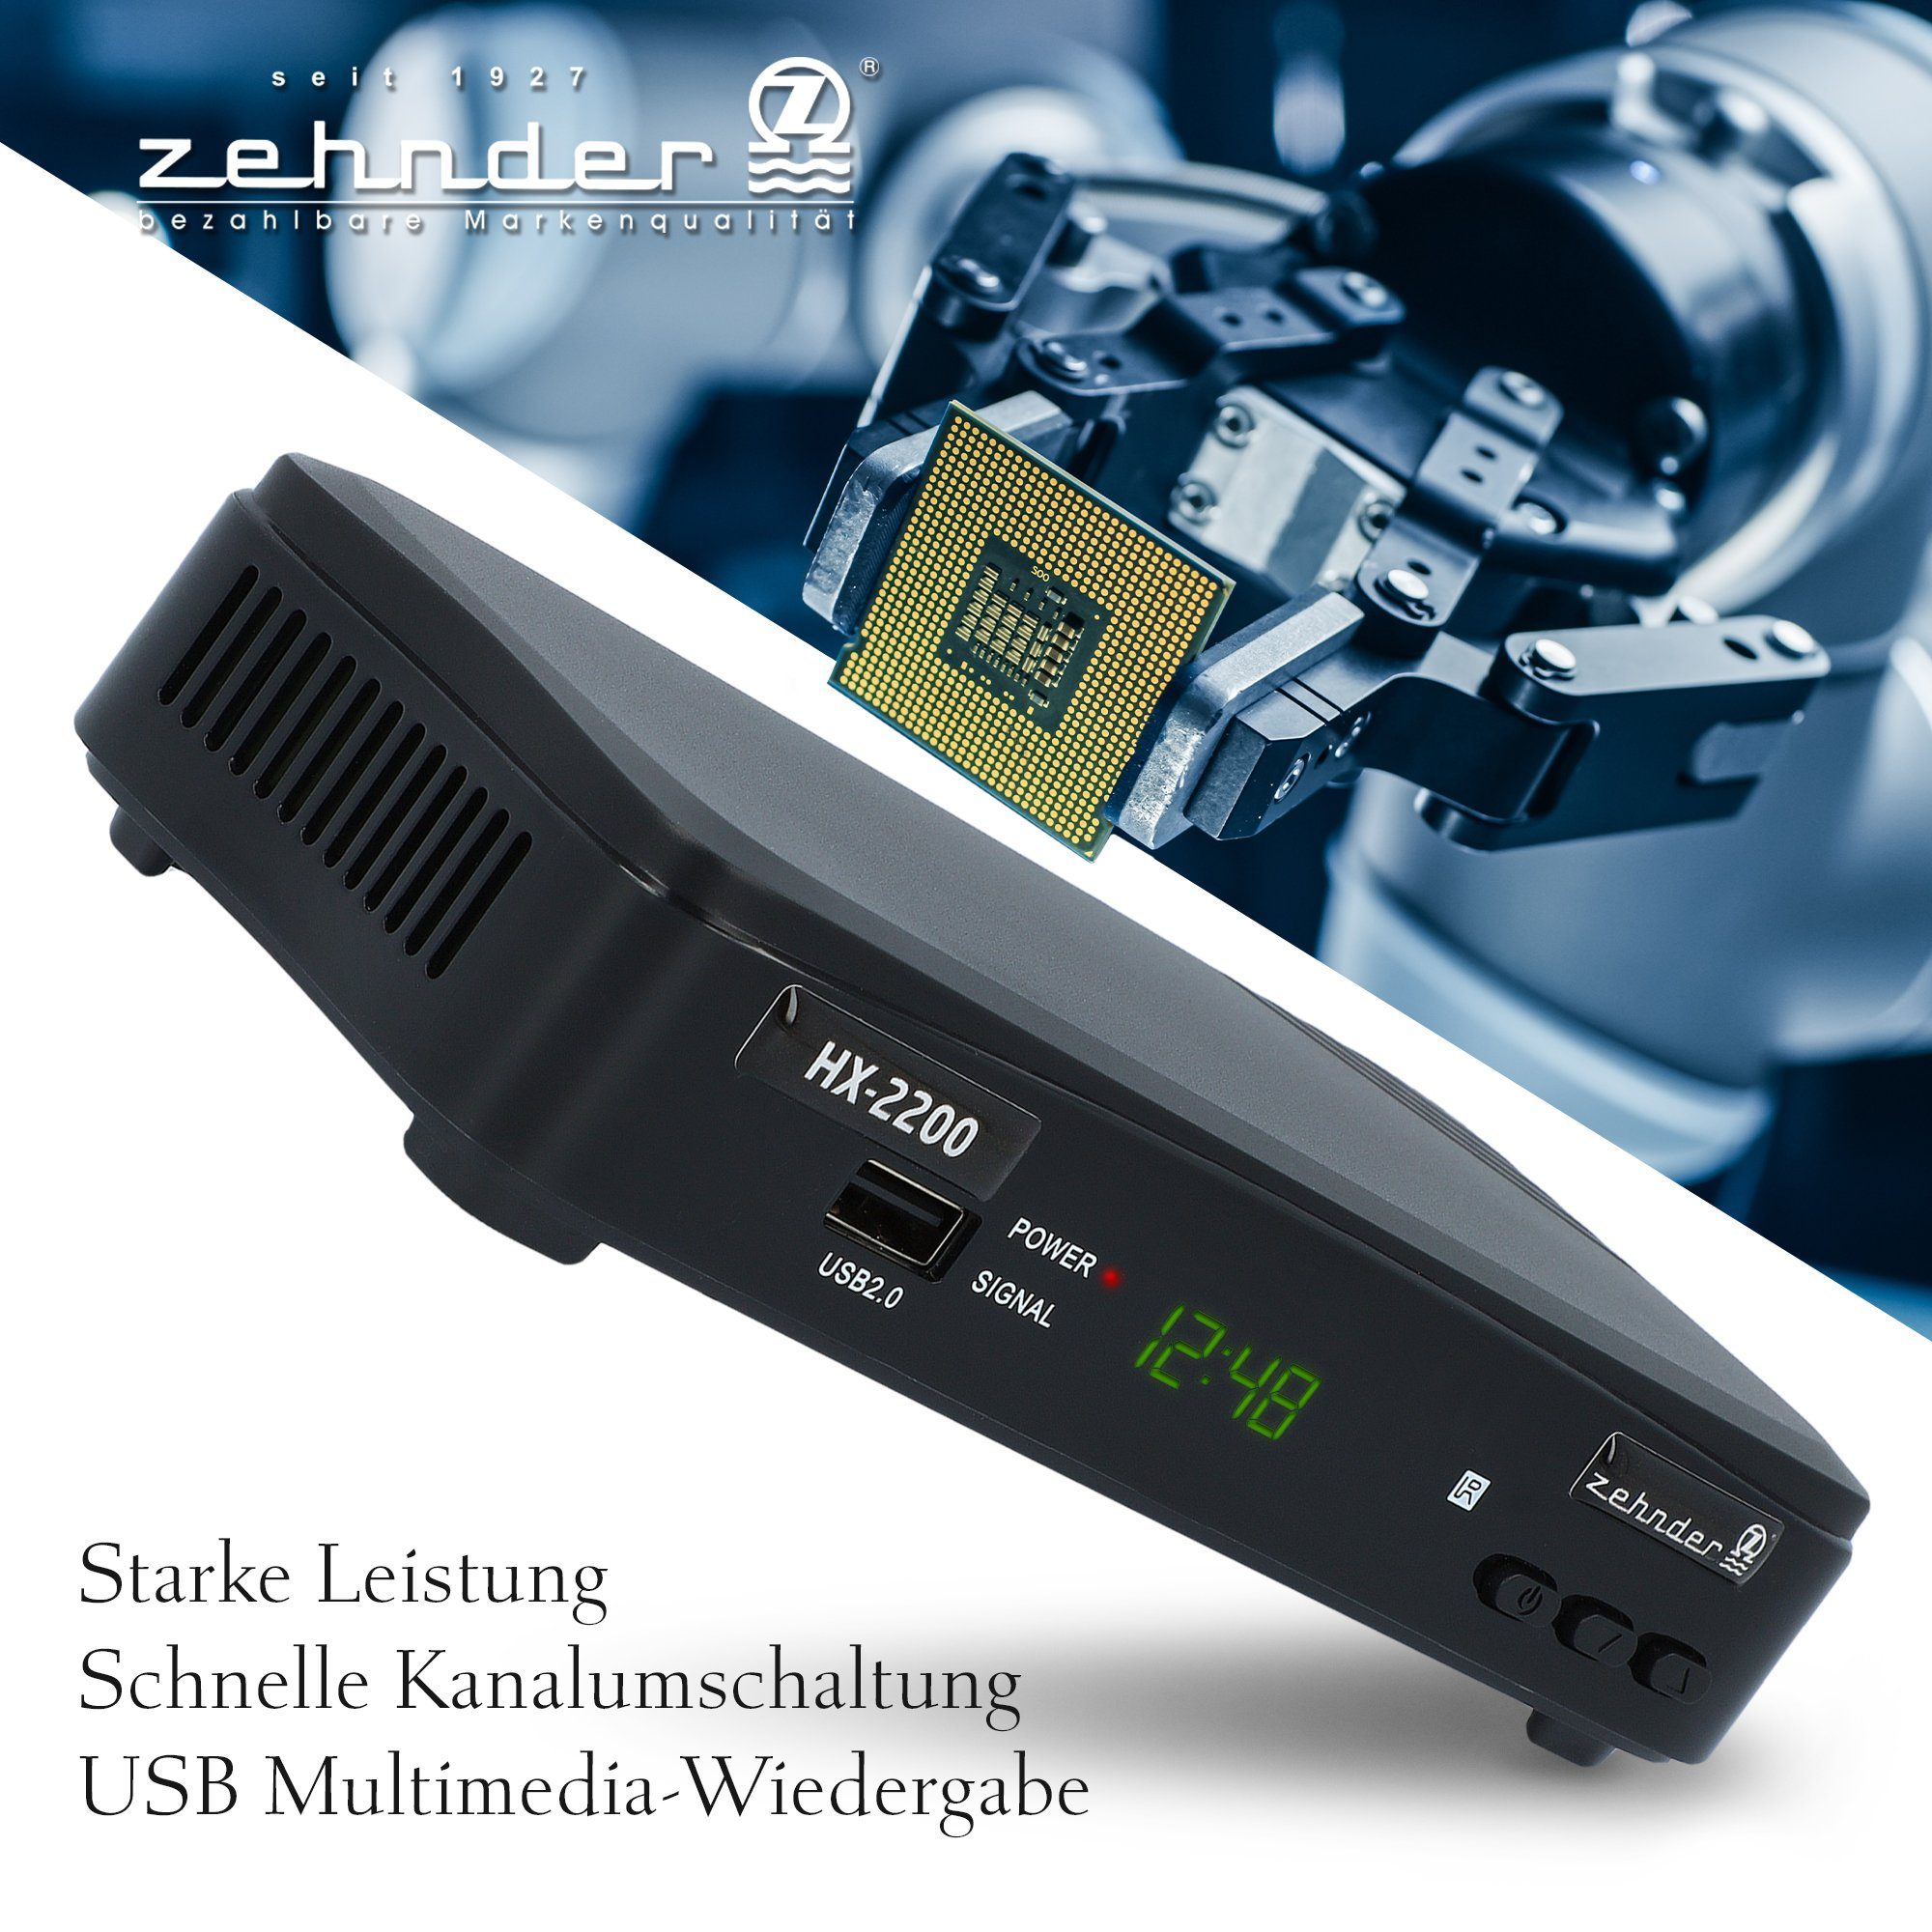 SAT-Receiver ready Coaxial, PVR 12V - SCART, Camping tauglich) HDMI, USB, Zehnder HX-2200 Einkabel (Aufnahmefunktion,